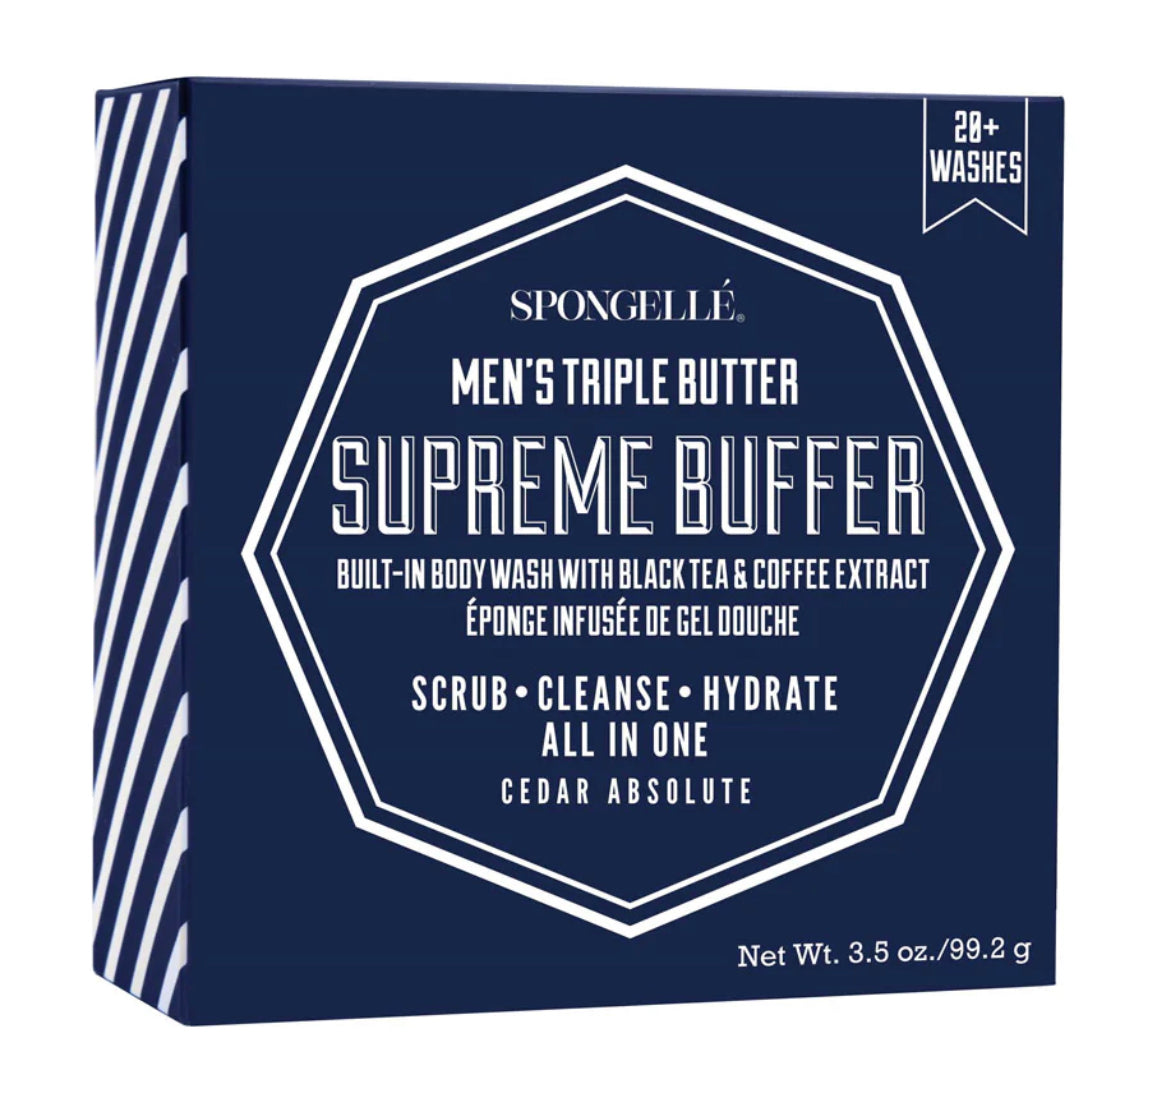 Men’s Supreme Buffer